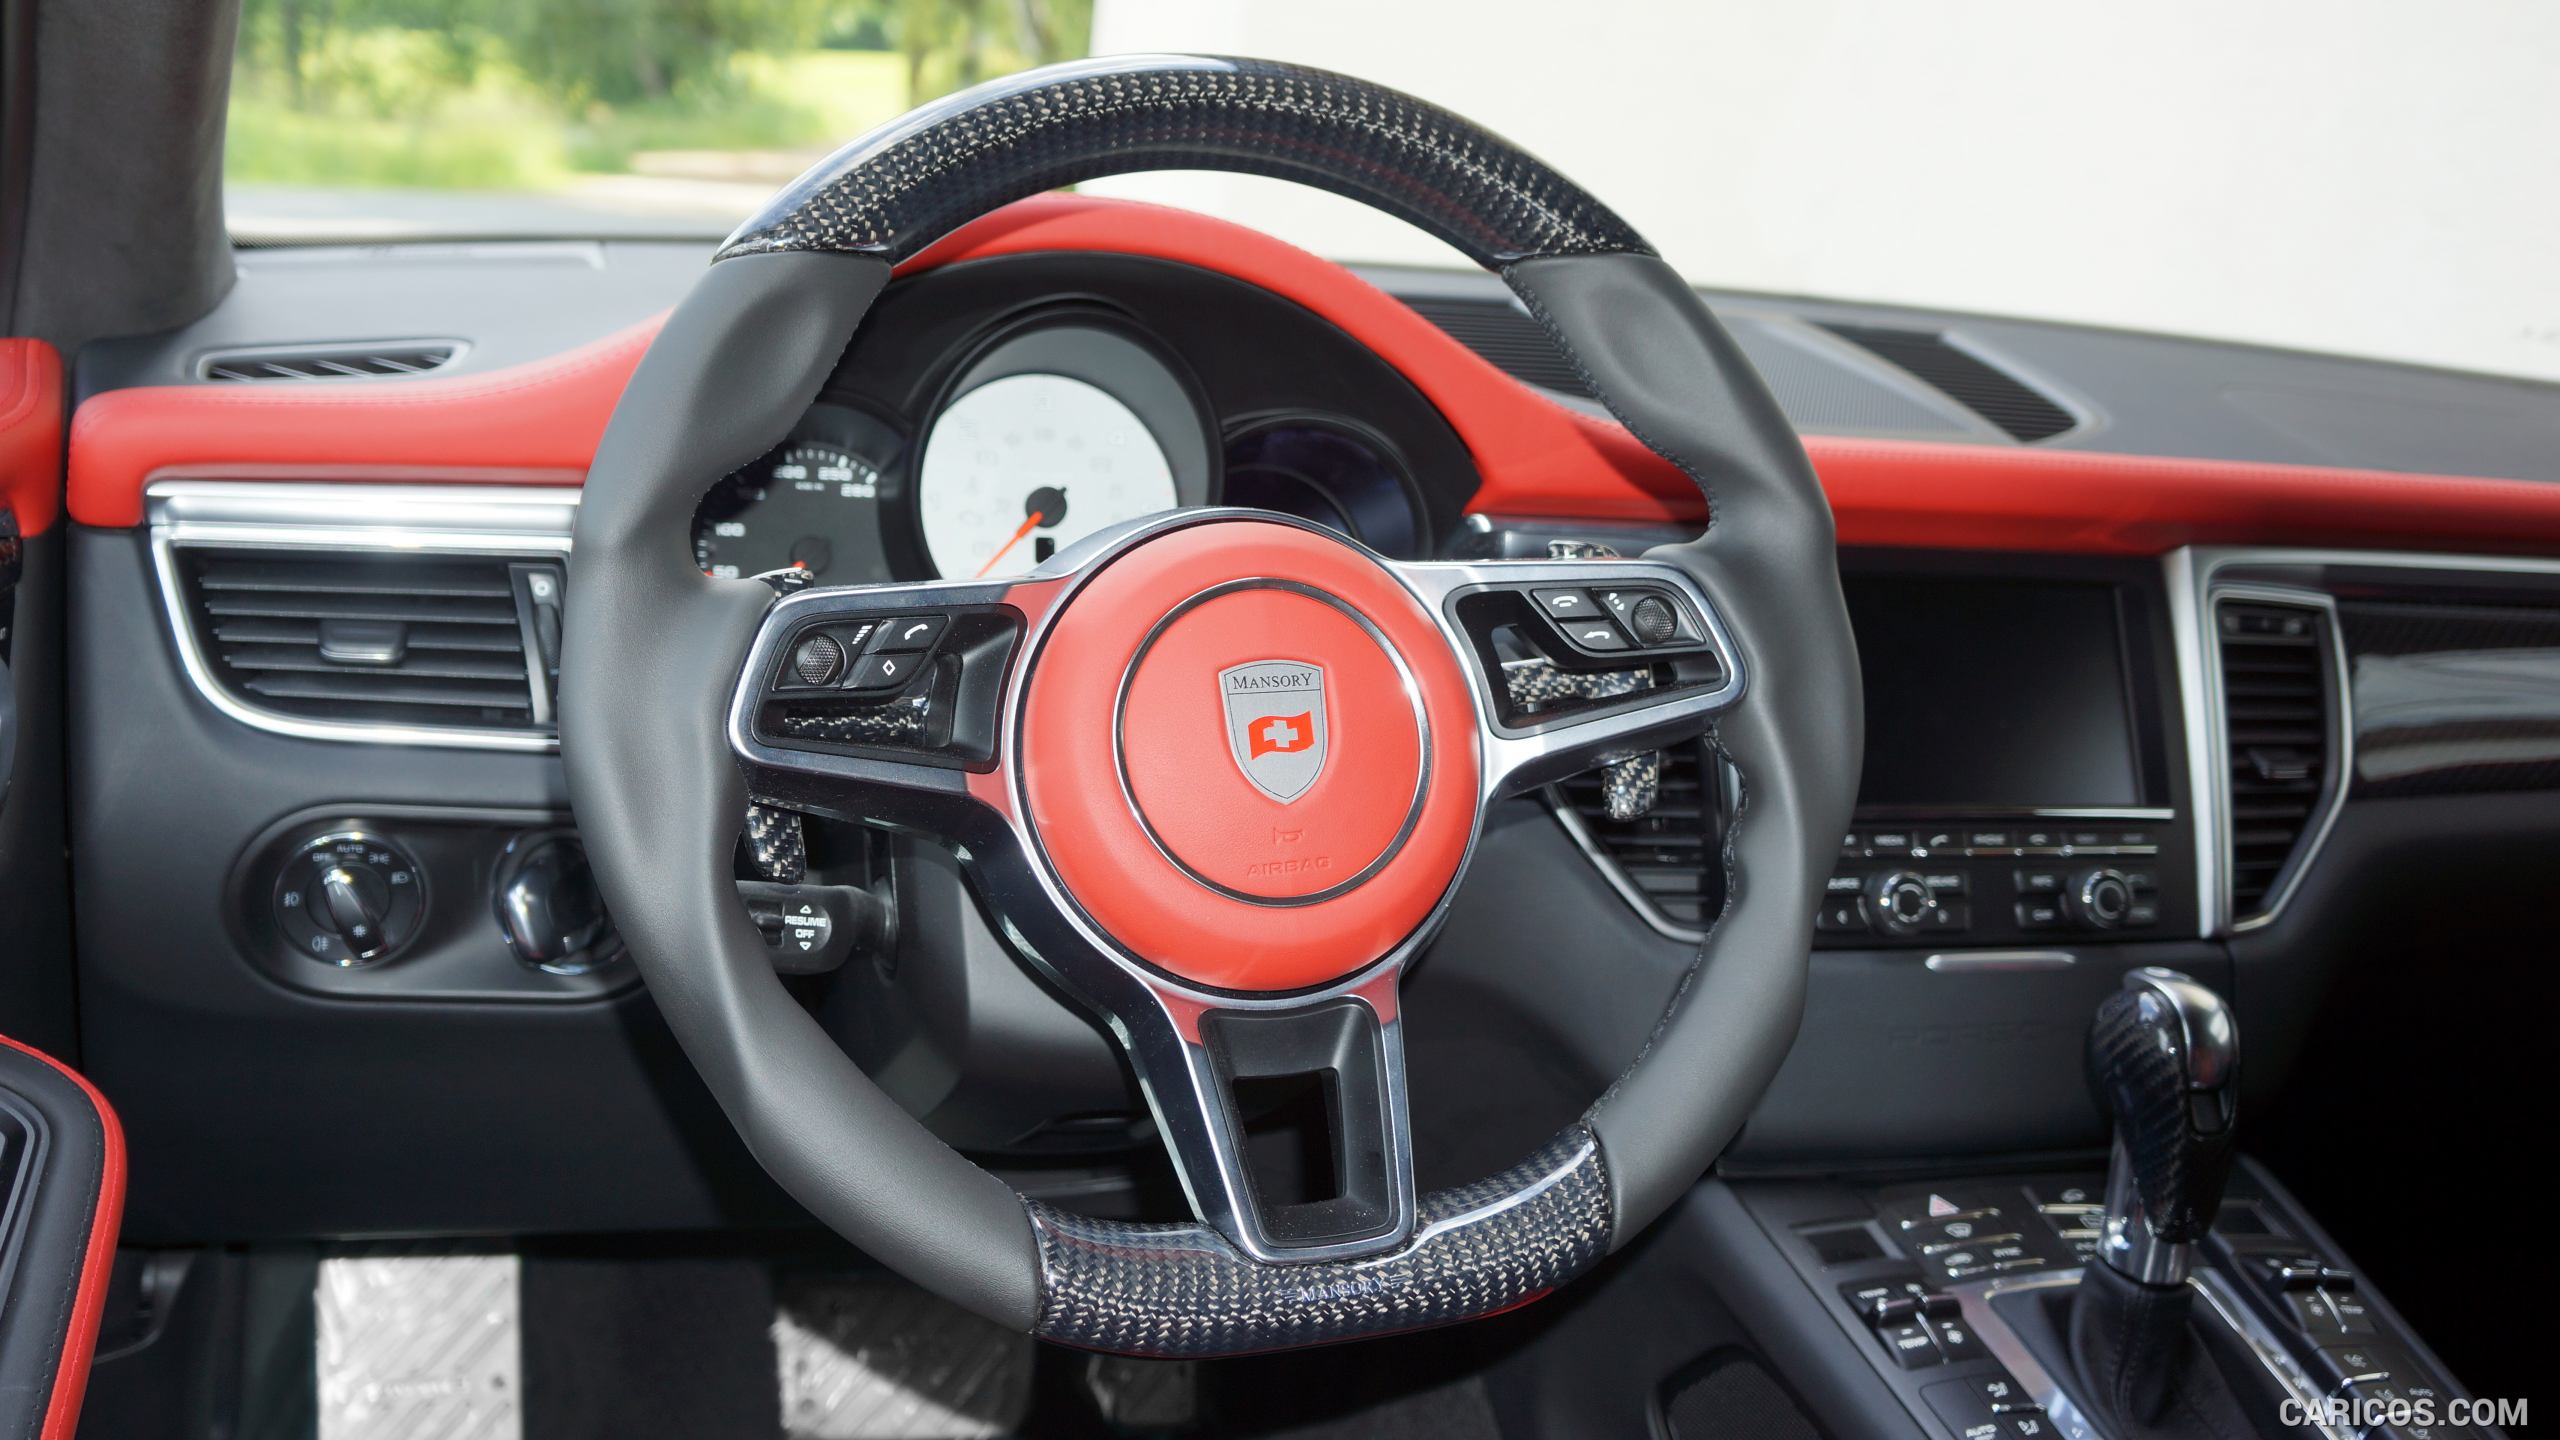 2015 MANSORY Porsche Macan - Interior Steering Wheel, #8 of 10